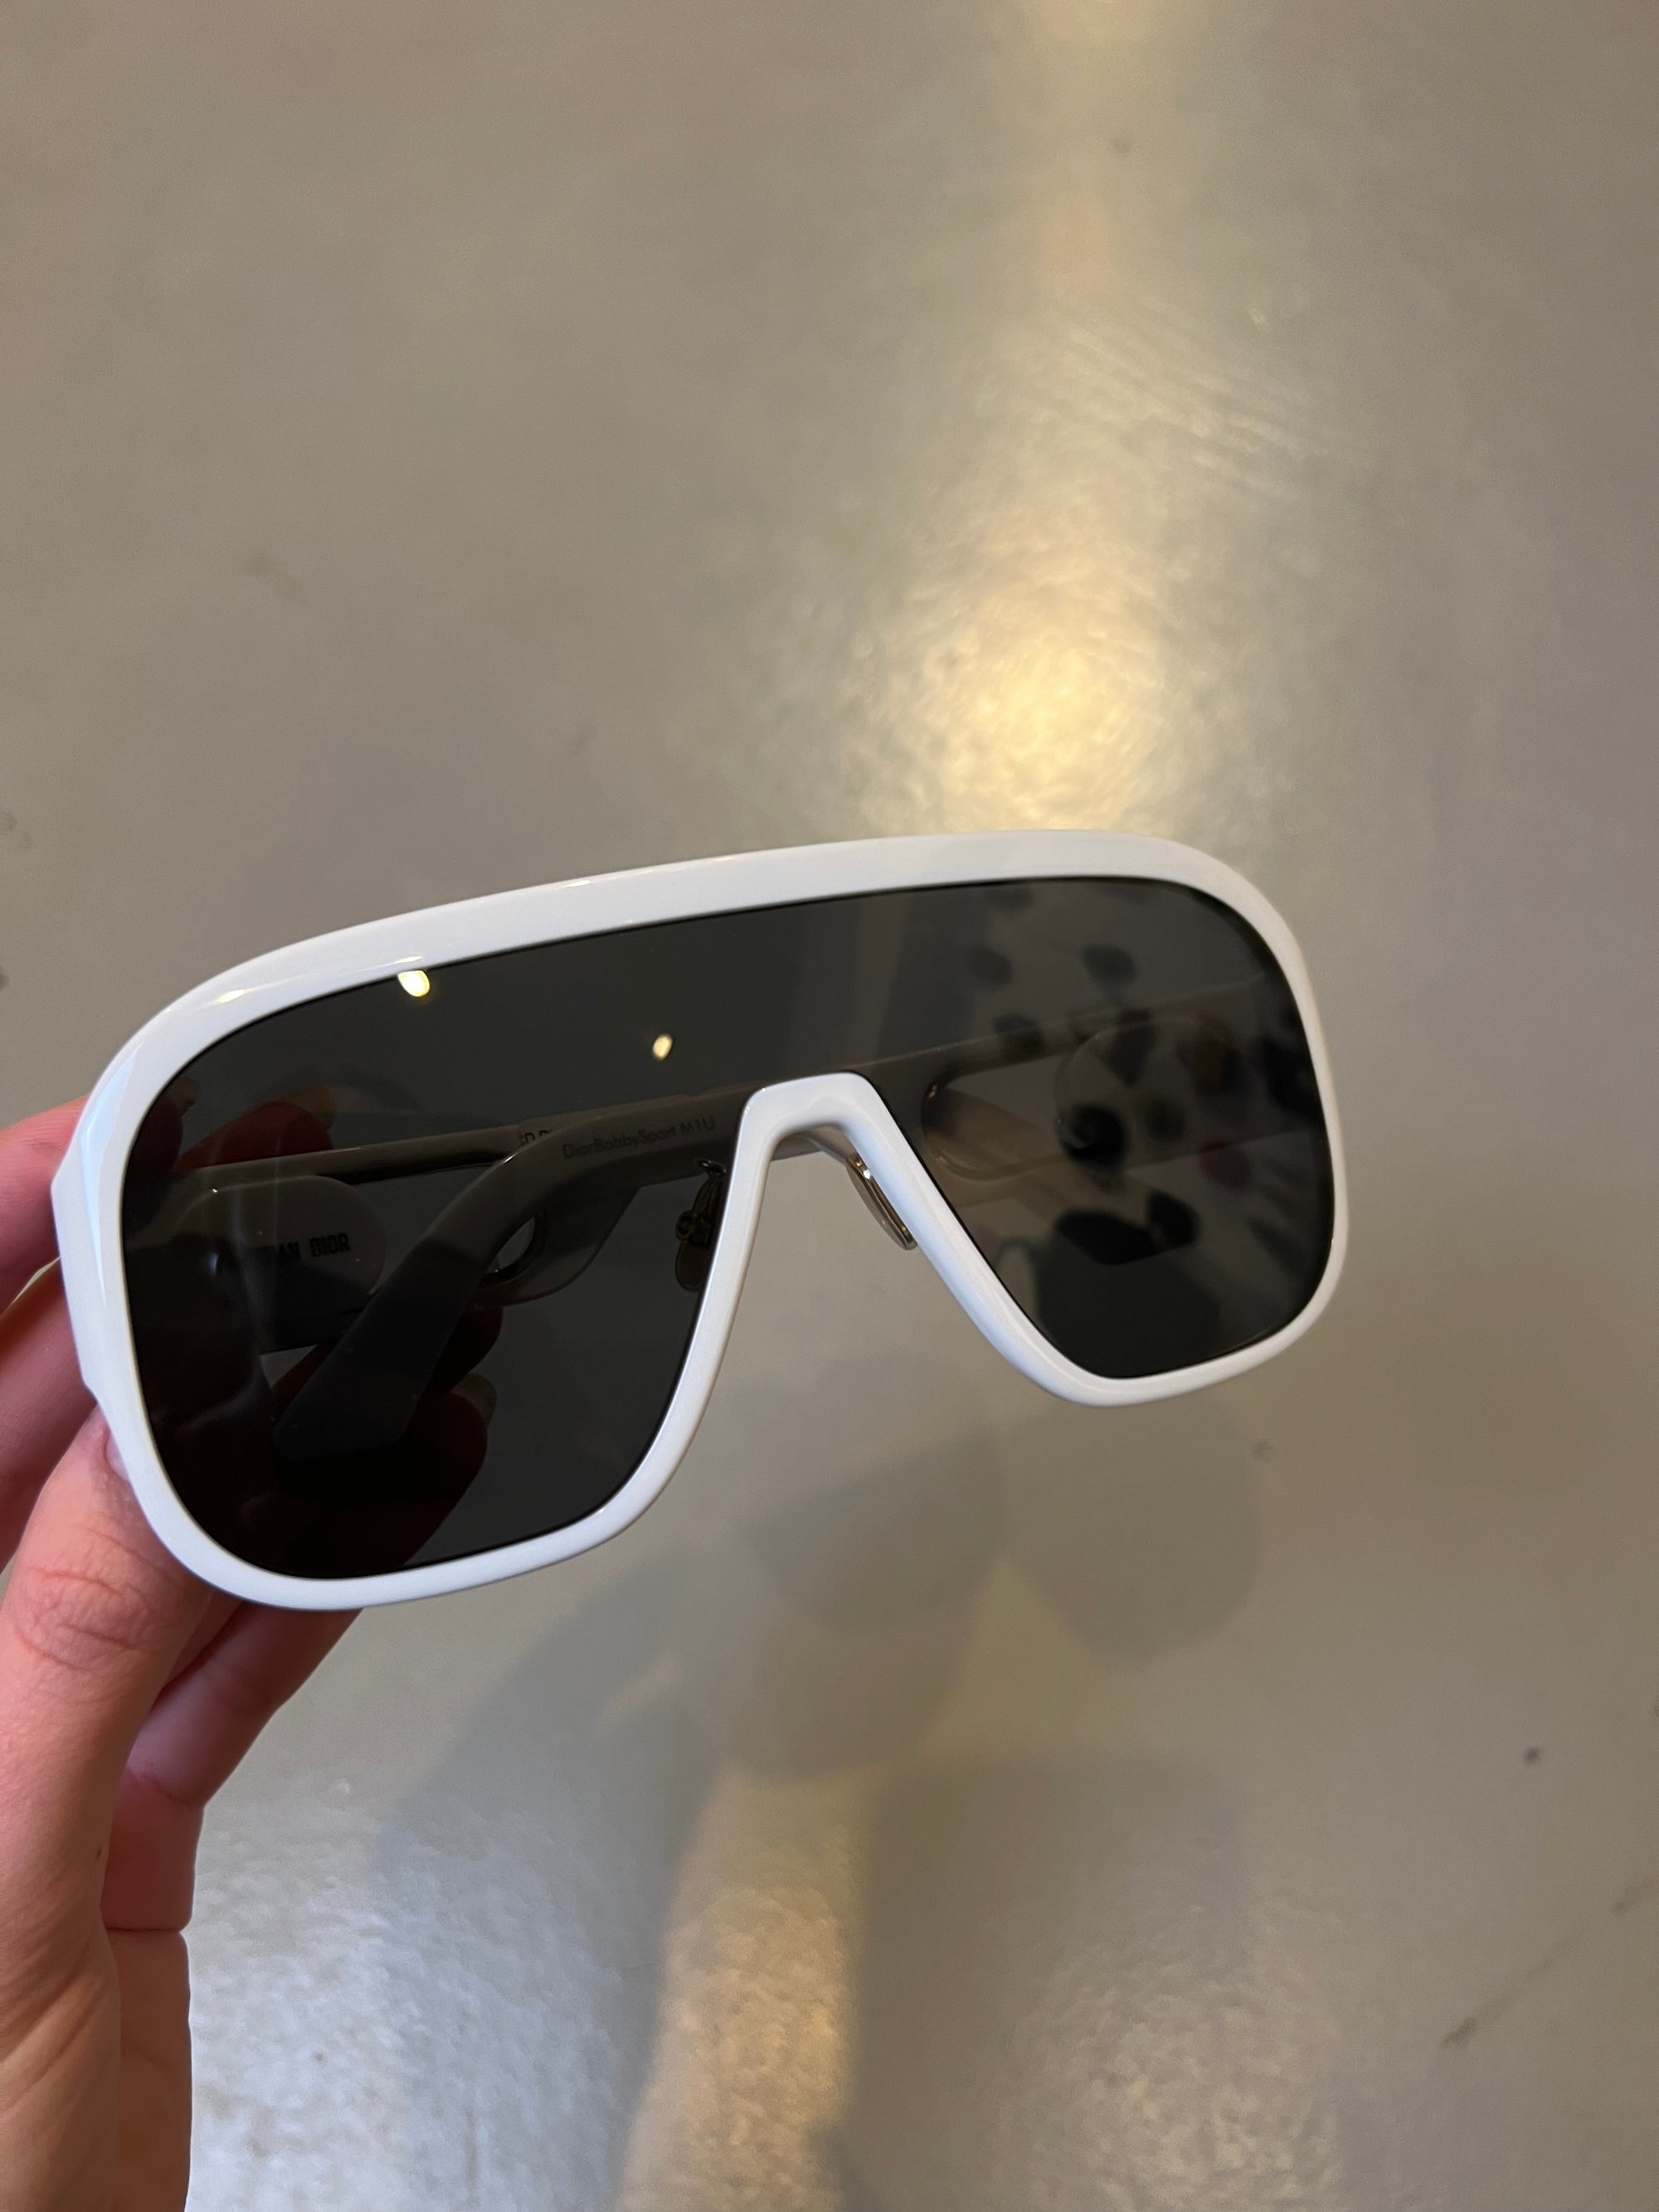 Produktbild der Christian Dior Sonnenbrille von vorne.